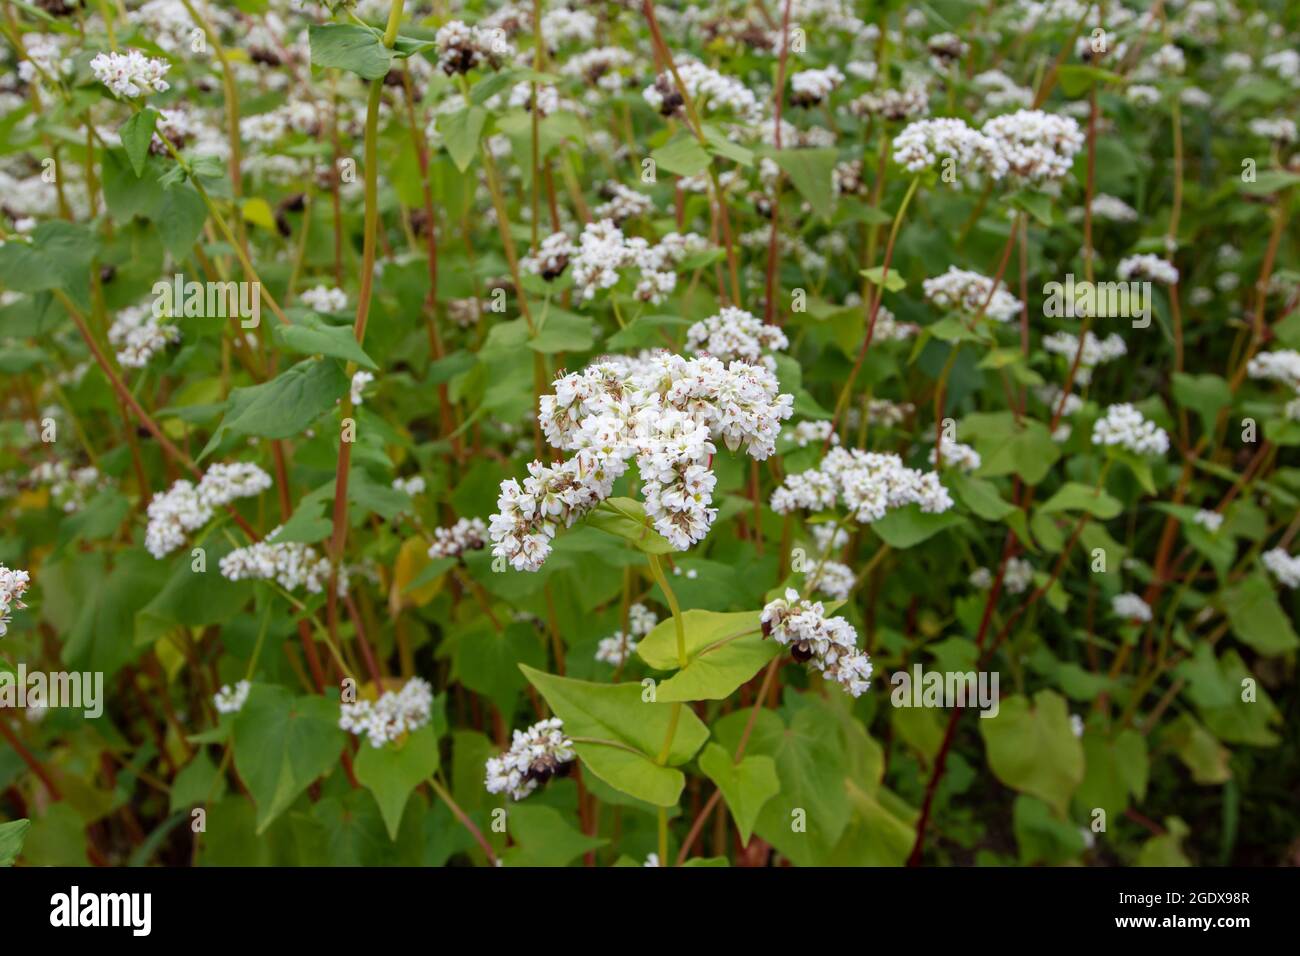 Plantation de sarrasin en fleur. Fagopyrum esculentum plantes avec fleurs blanches. Banque D'Images